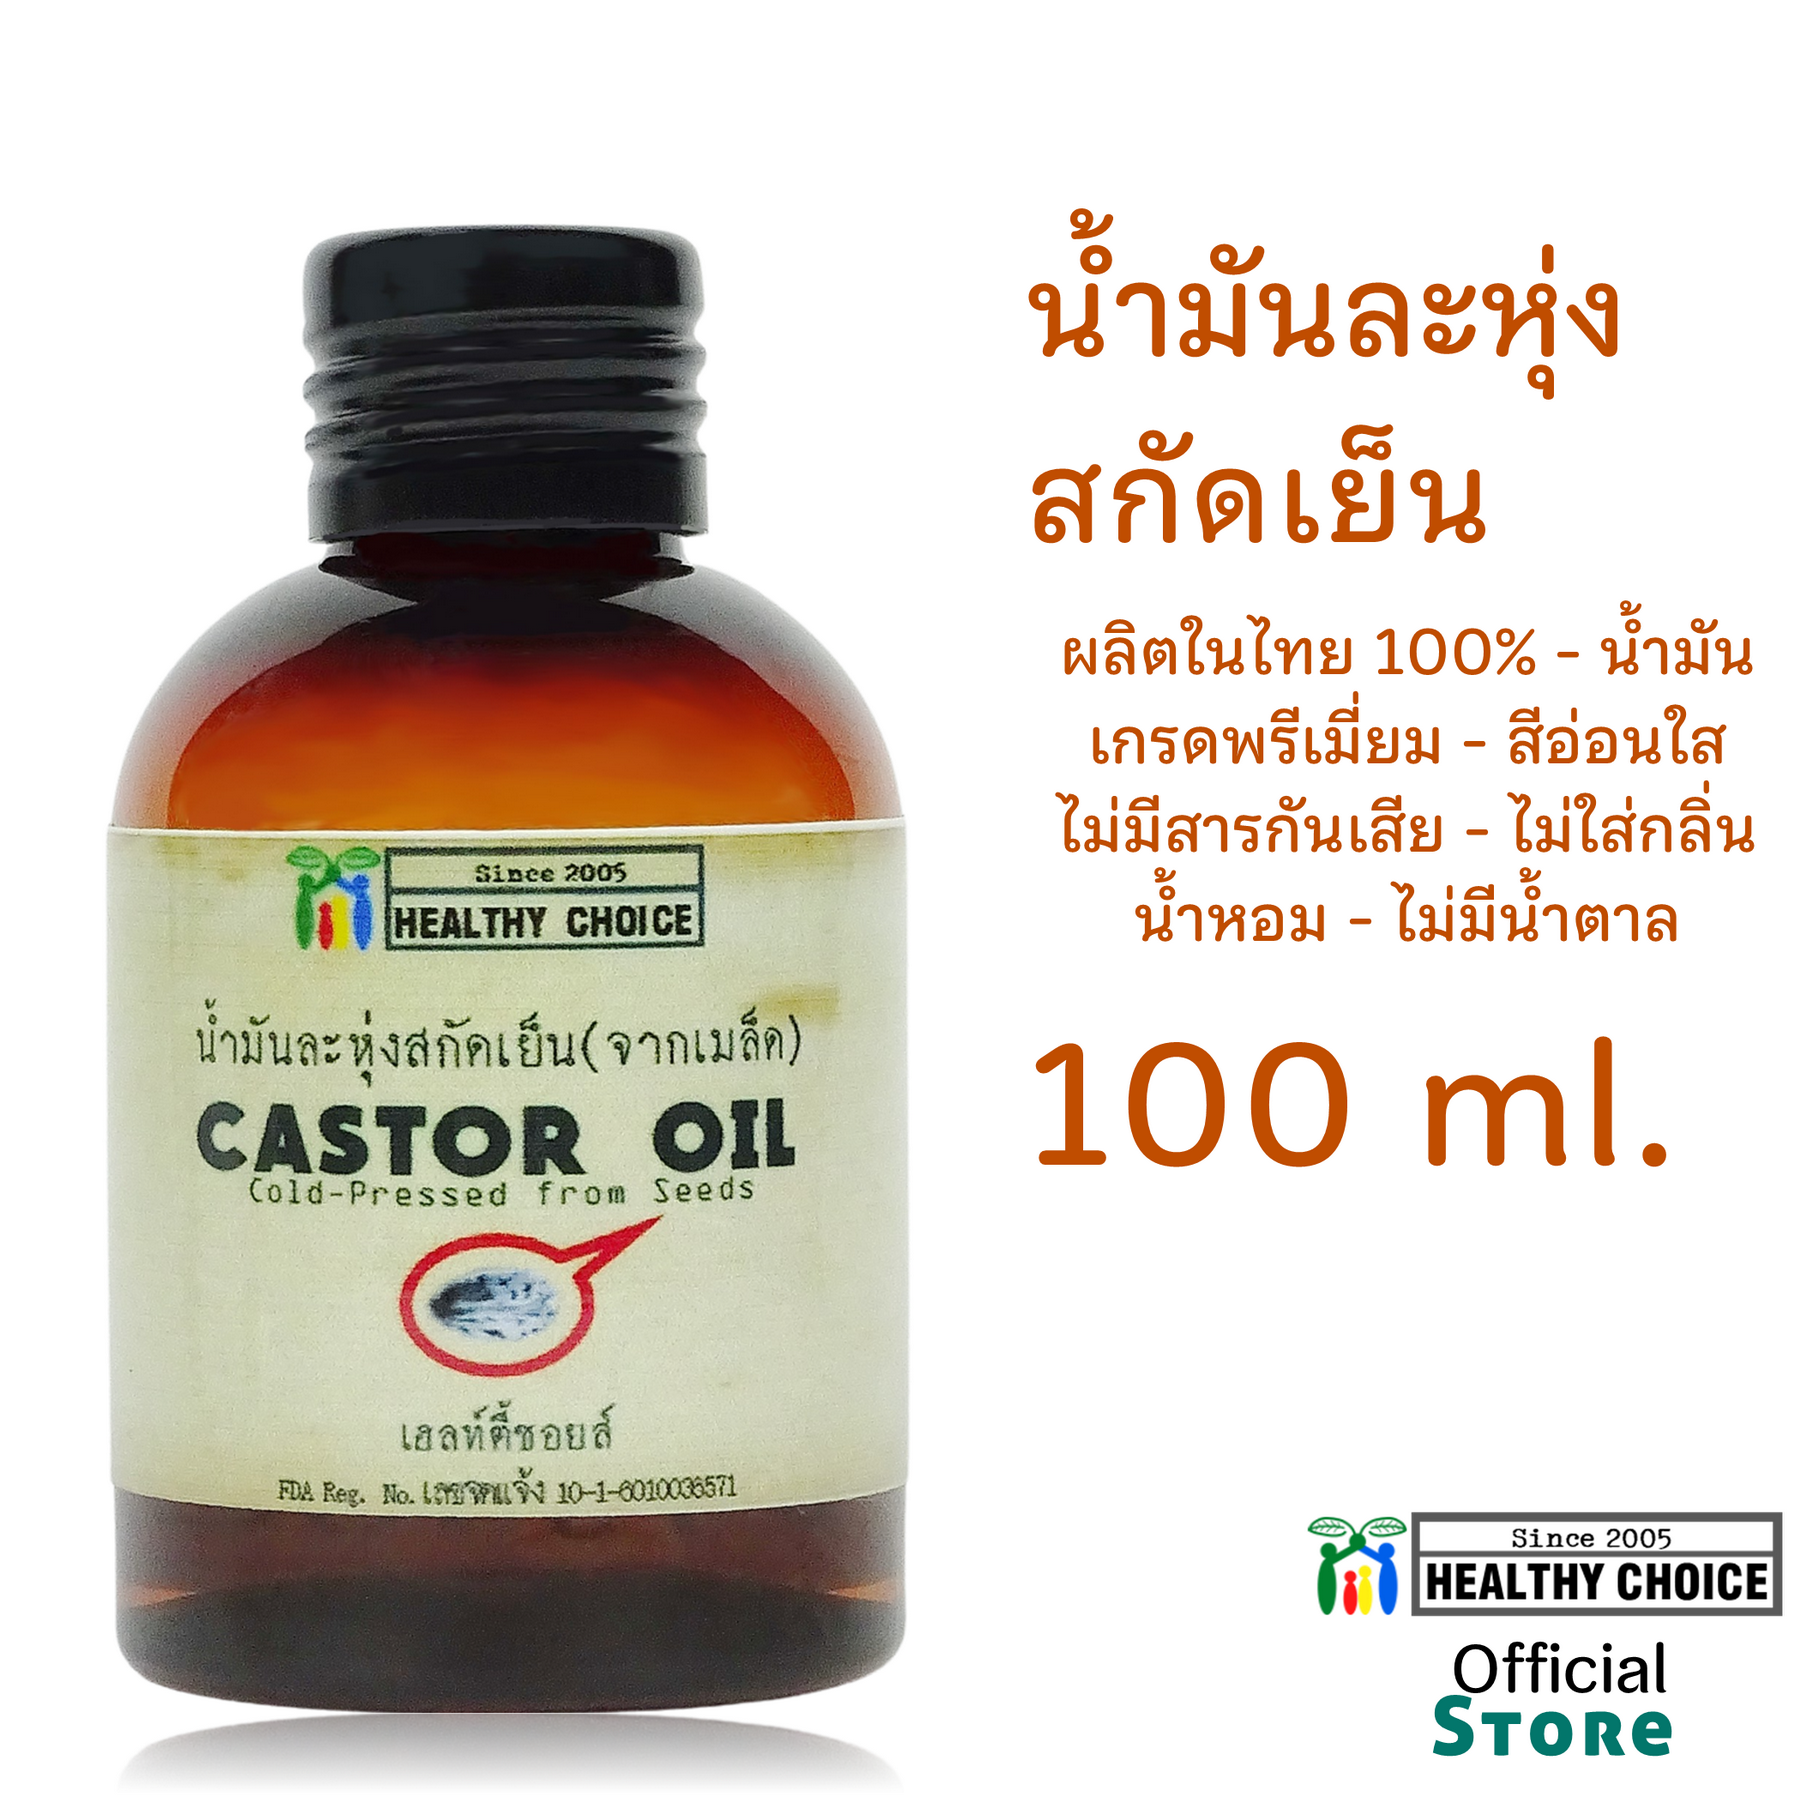 น้ำมันจาก เมล็ดละหุ่ง สกัดเย็น 100 มล Healthy Choice++ส่งฟรีทั่วไทย++Free Domestic Shipping++